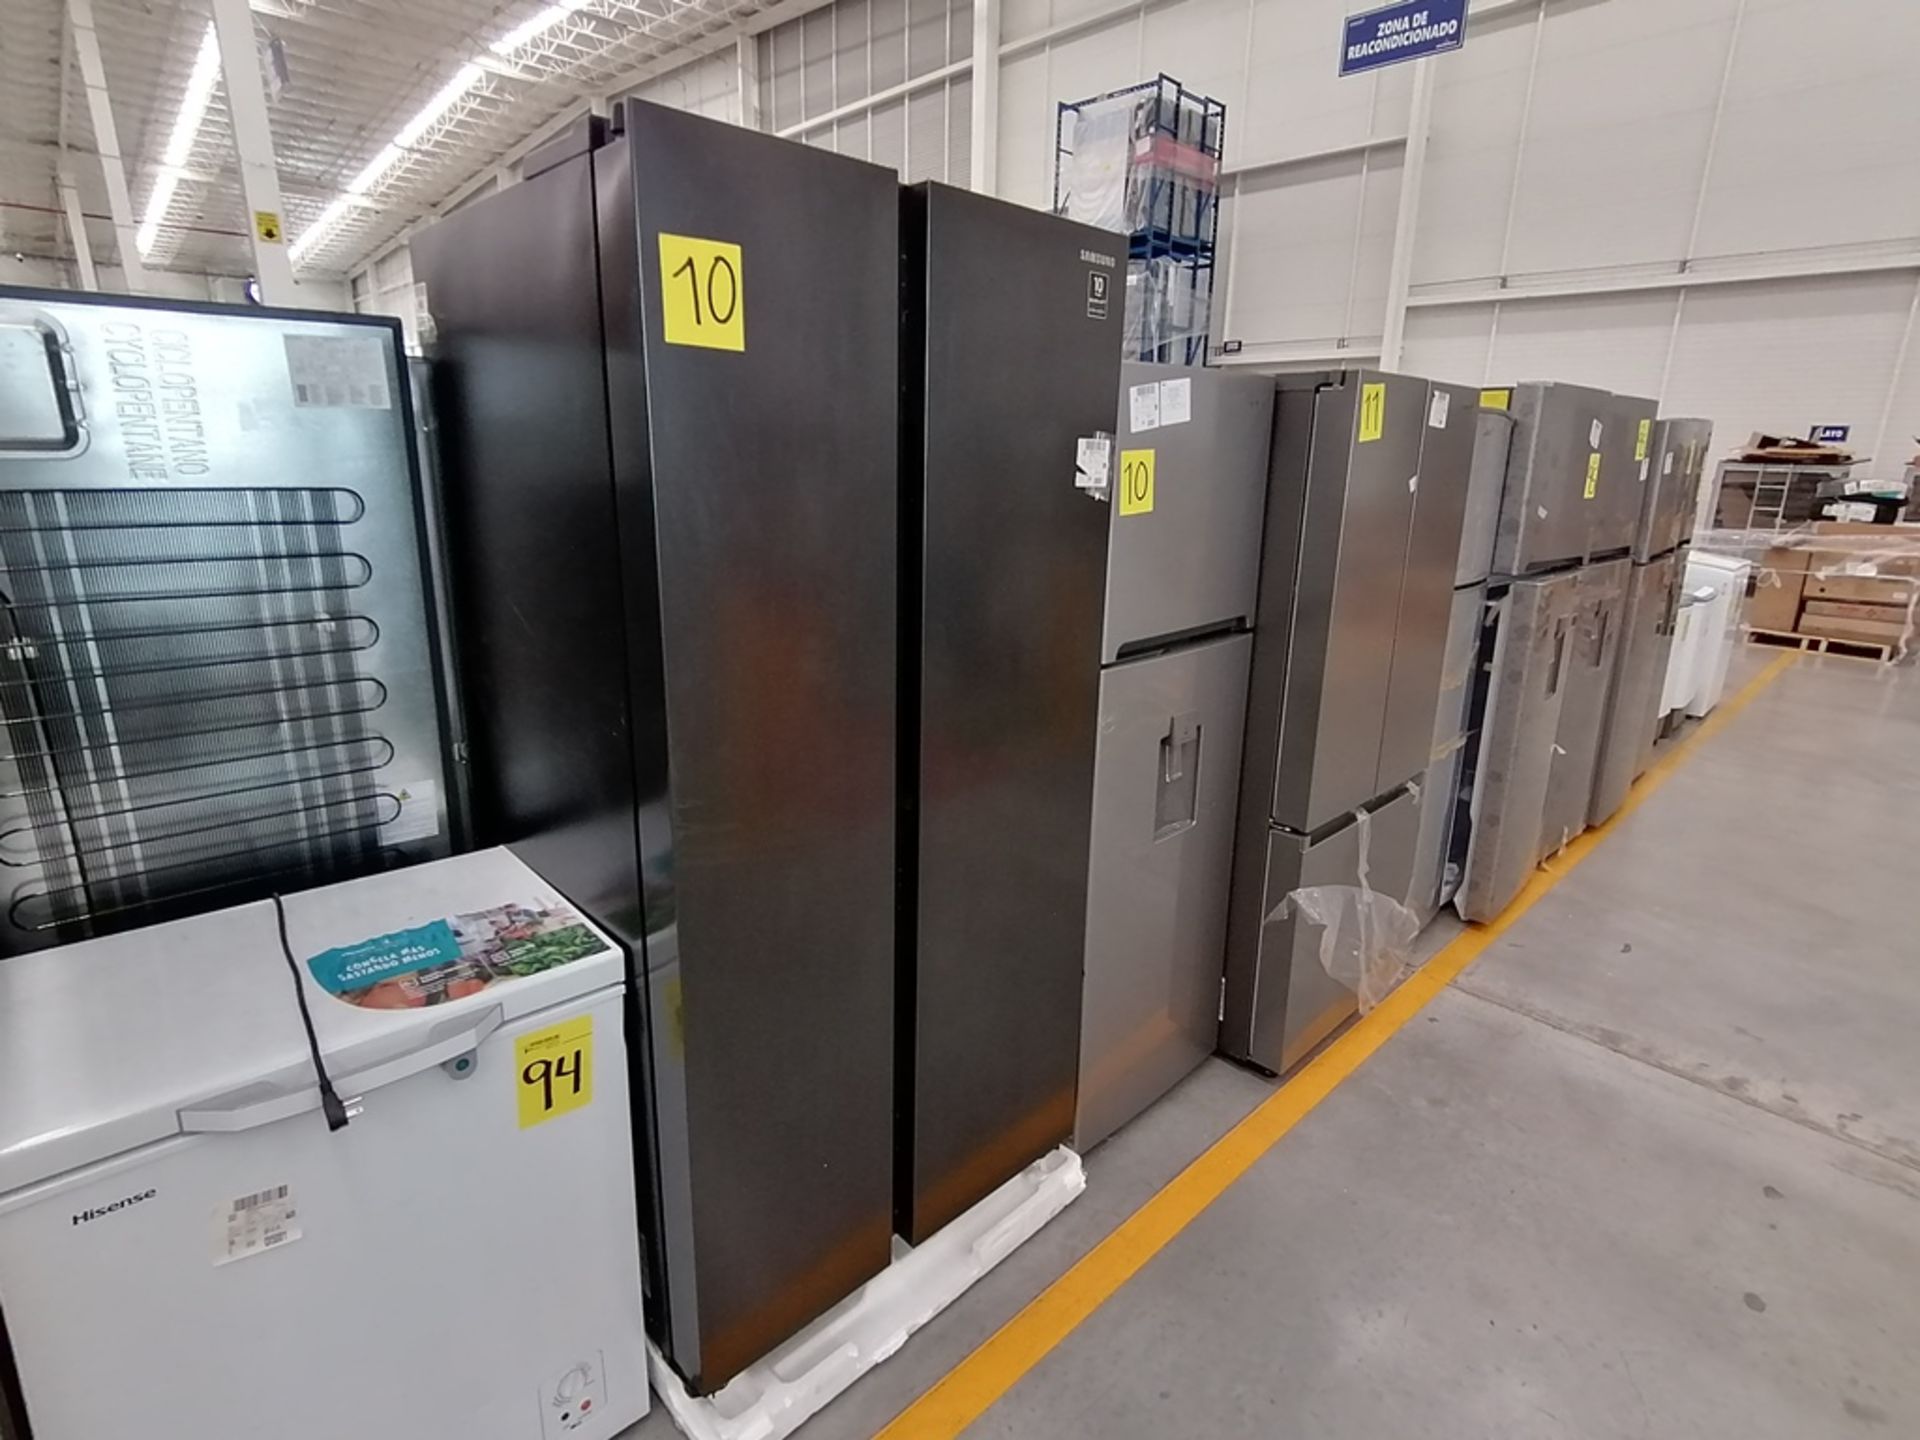 Lote de 2 refrigeradores incluye: 1 Refrigerador, Marca Samsung, Modelo RS28T5B00B1, Serie 0B2V4BAR - Image 2 of 13